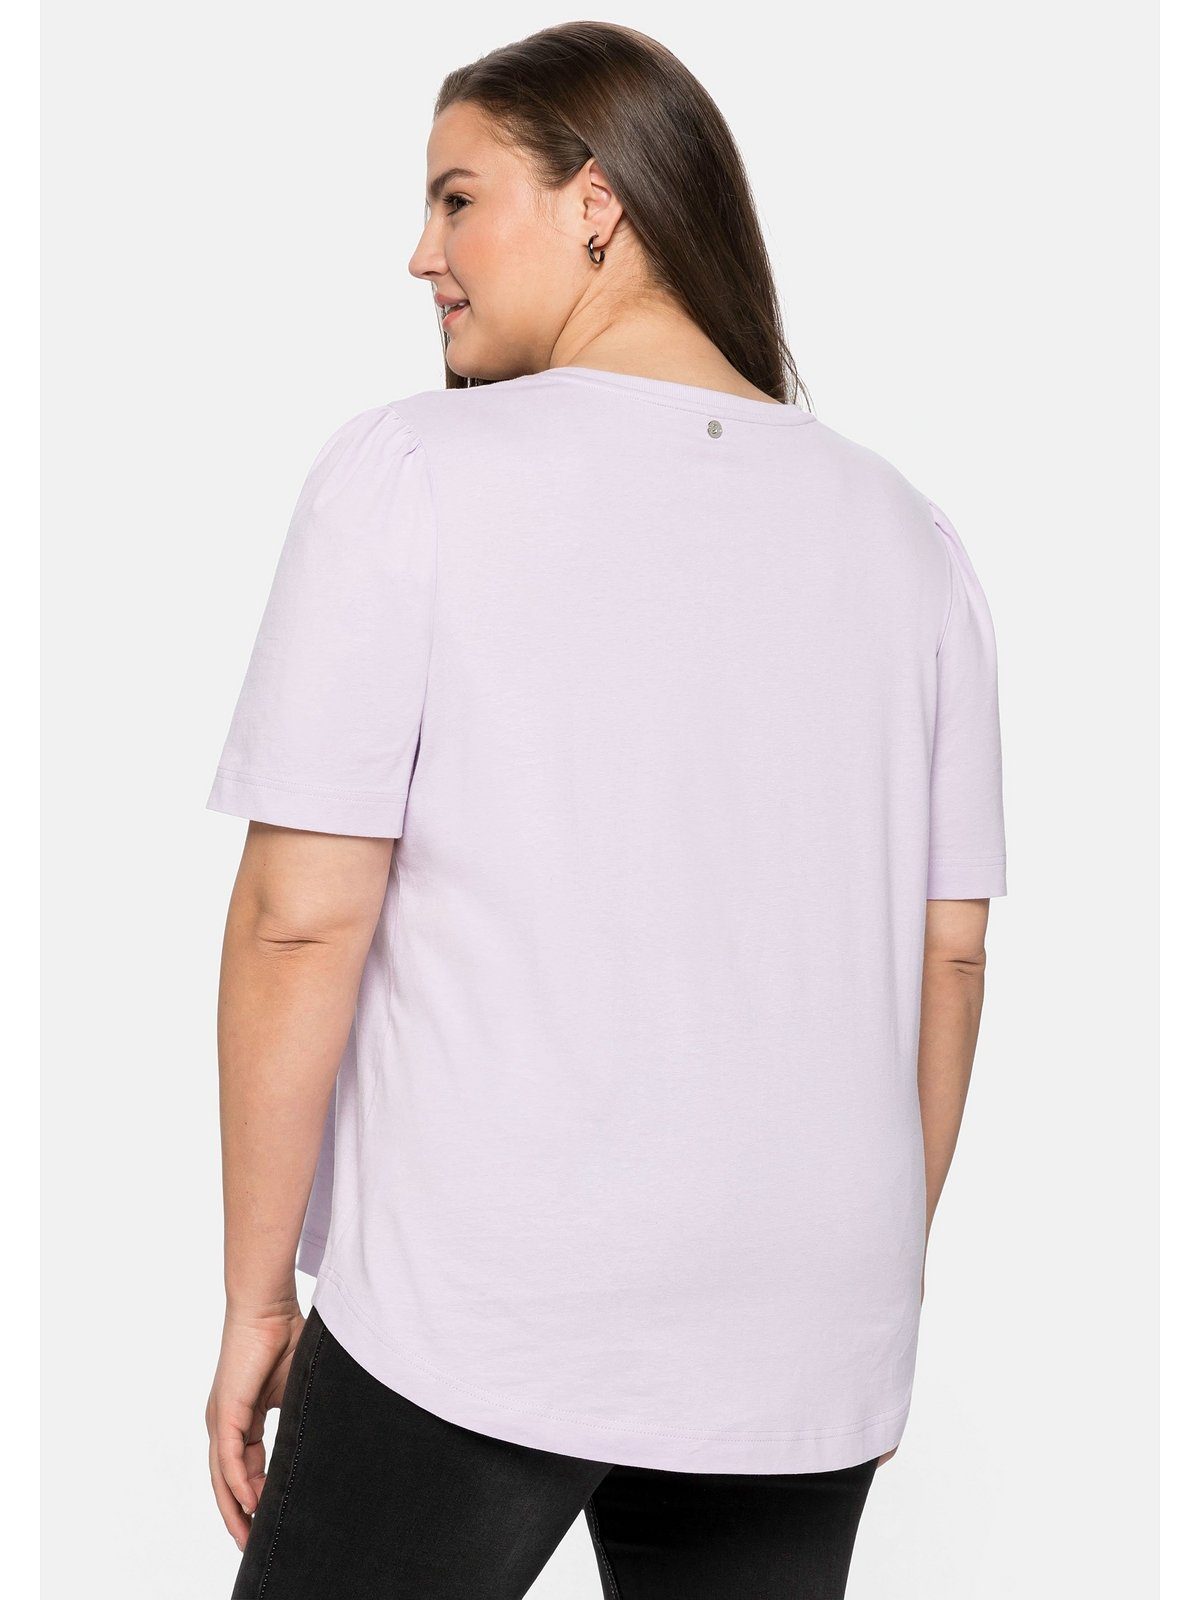 Sheego T-Shirt Große Größen aus Baumwolle mit Frontdruck lavendel